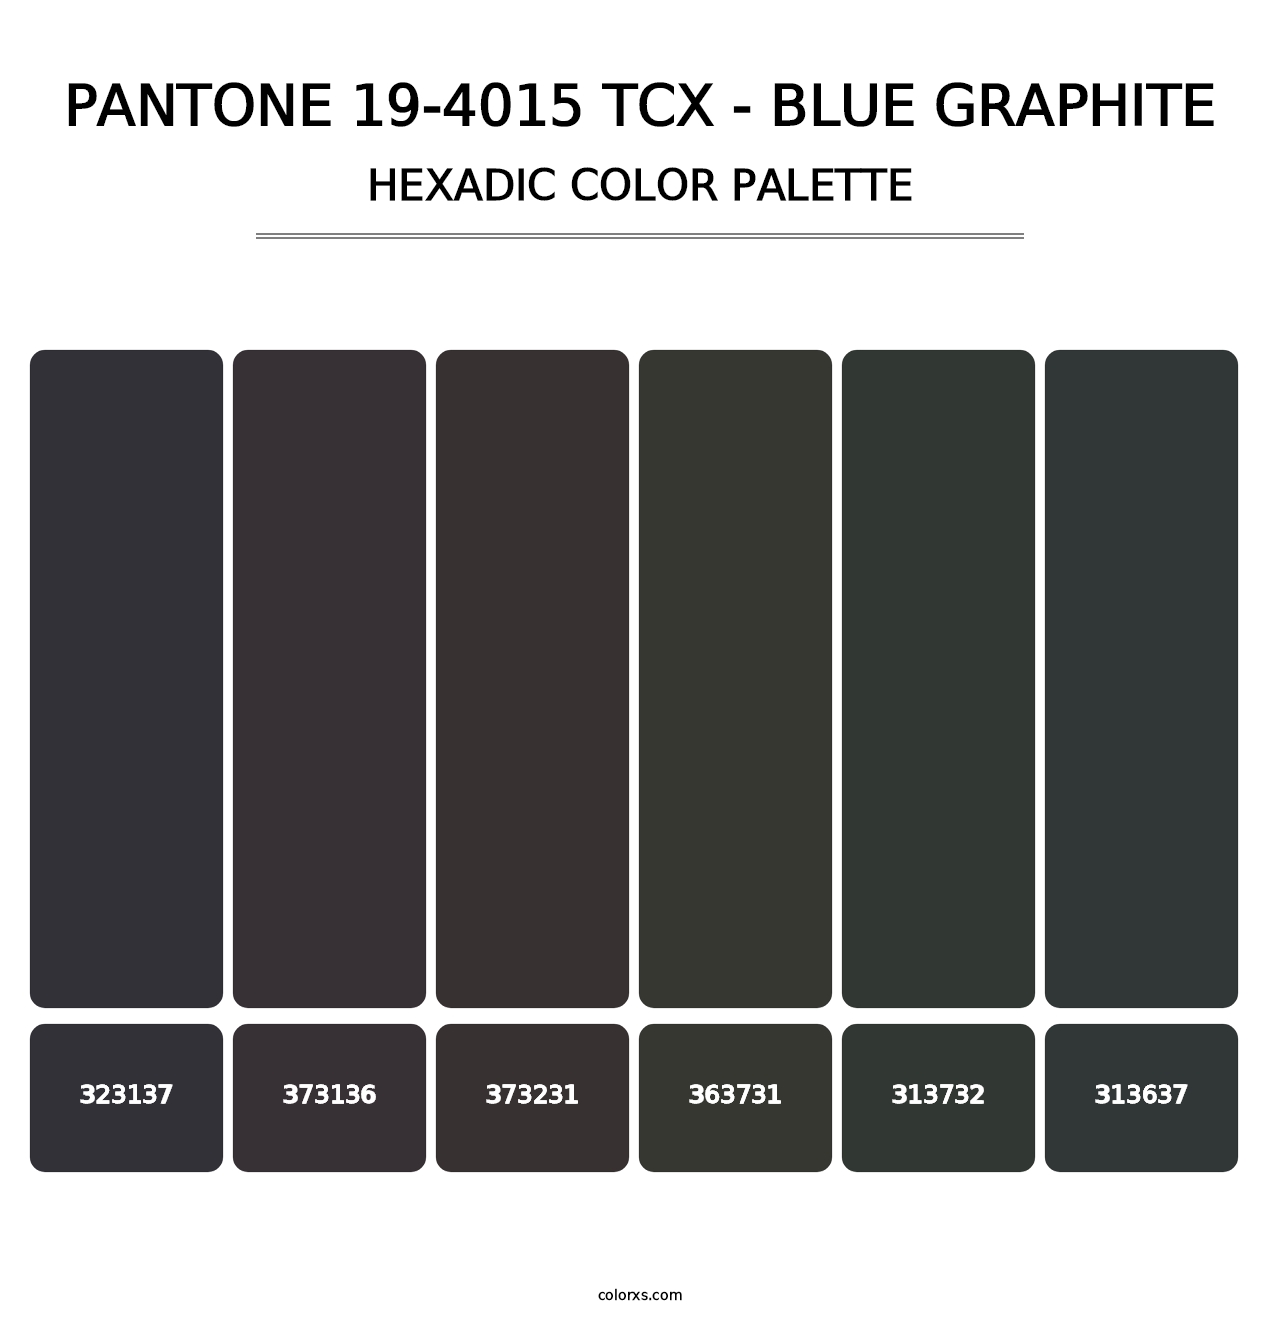 PANTONE 19-4015 TCX - Blue Graphite - Hexadic Color Palette